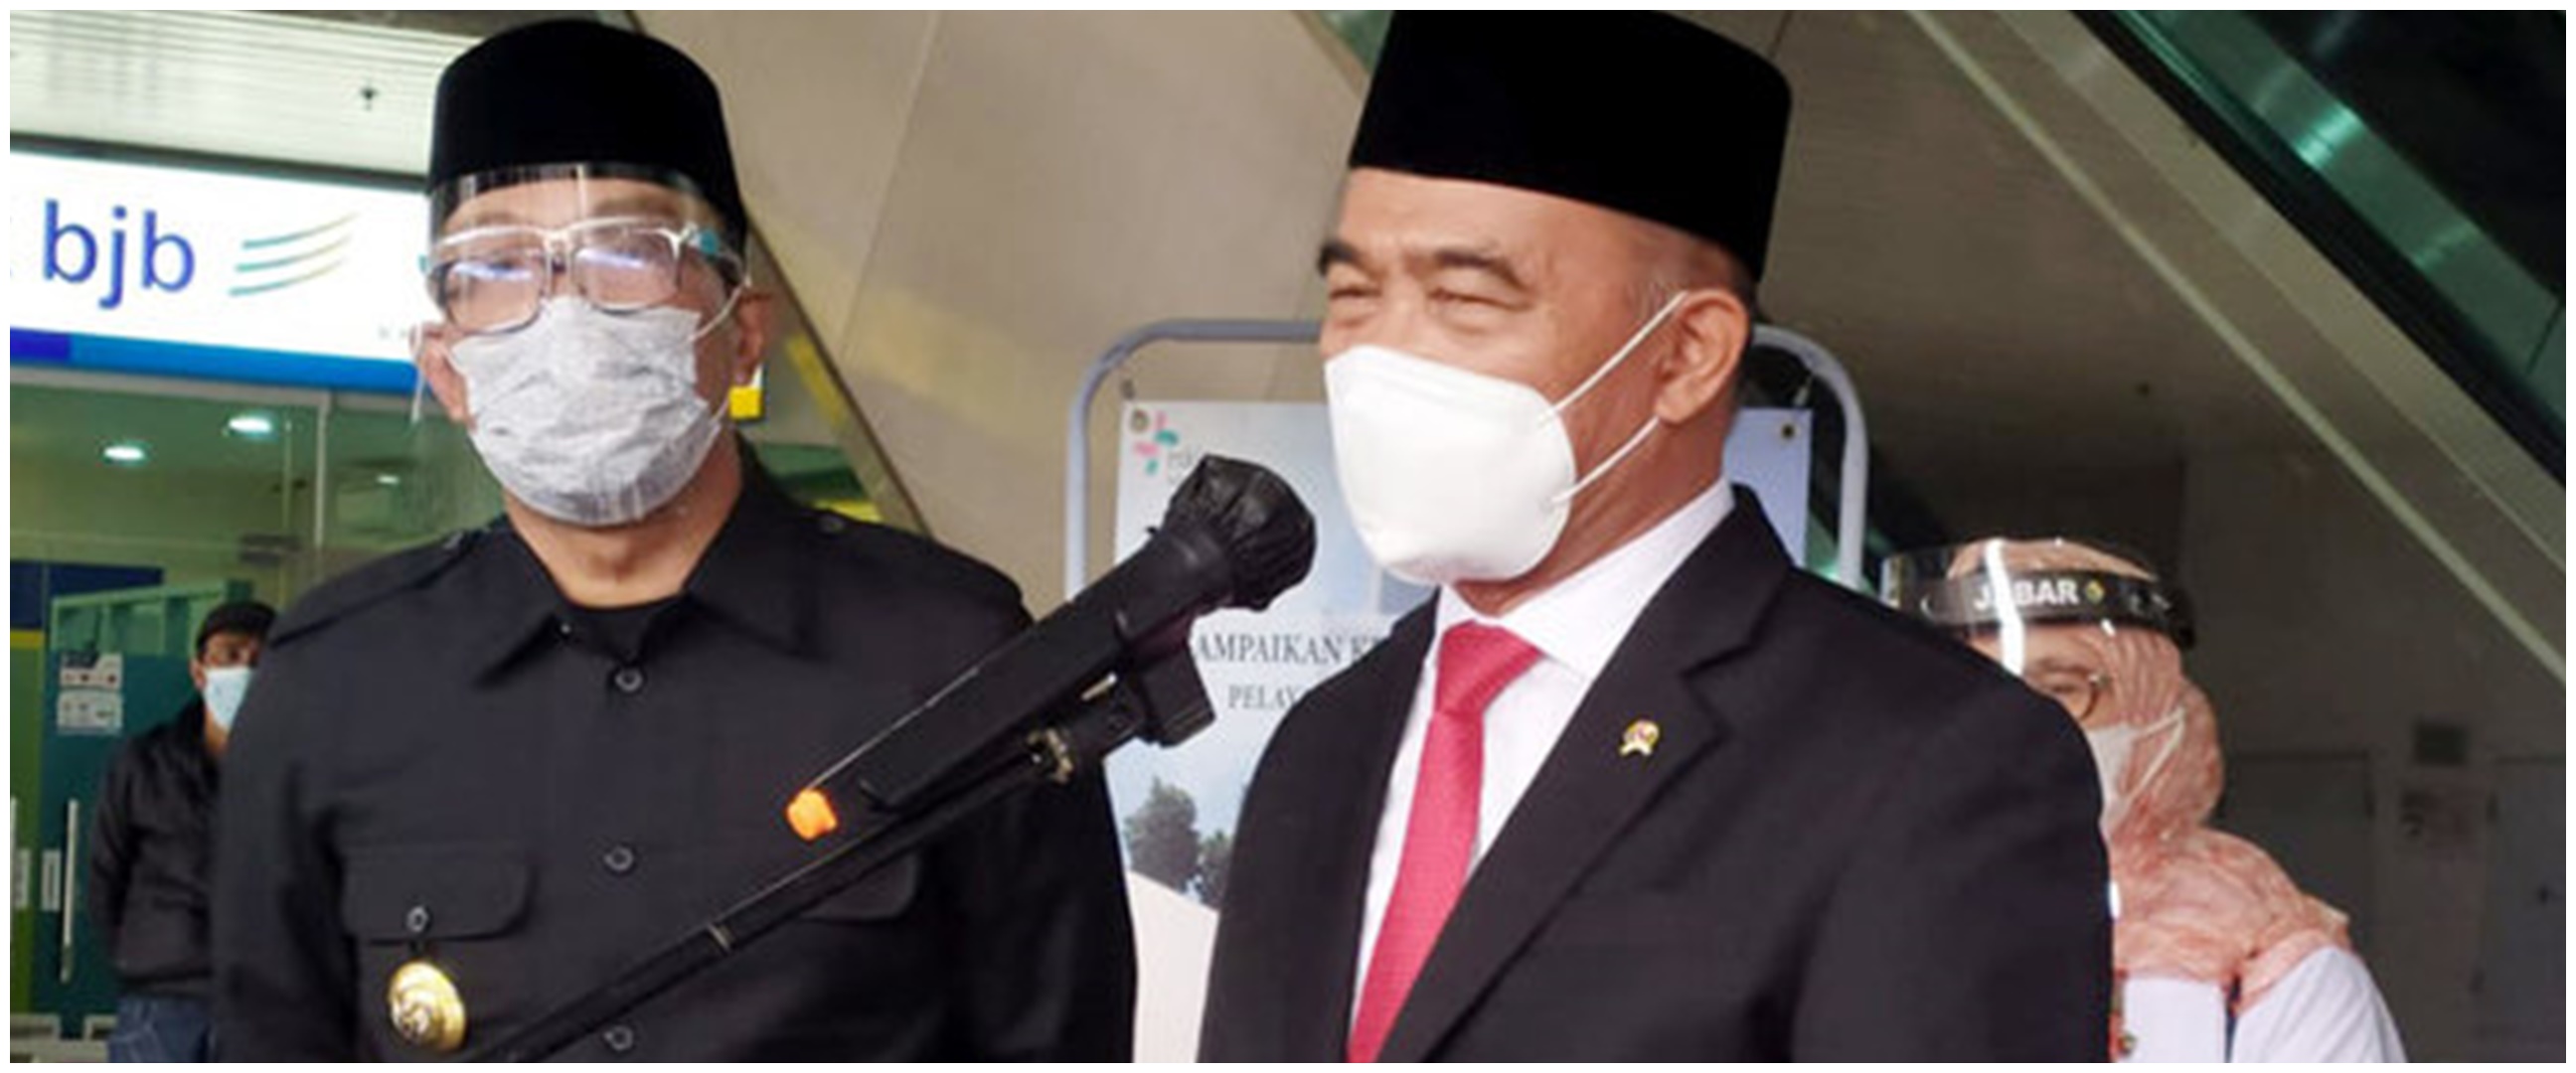 Menko Muhadjir sebut Jokowi perpanjang PPKM darurat sampai akhir Juli